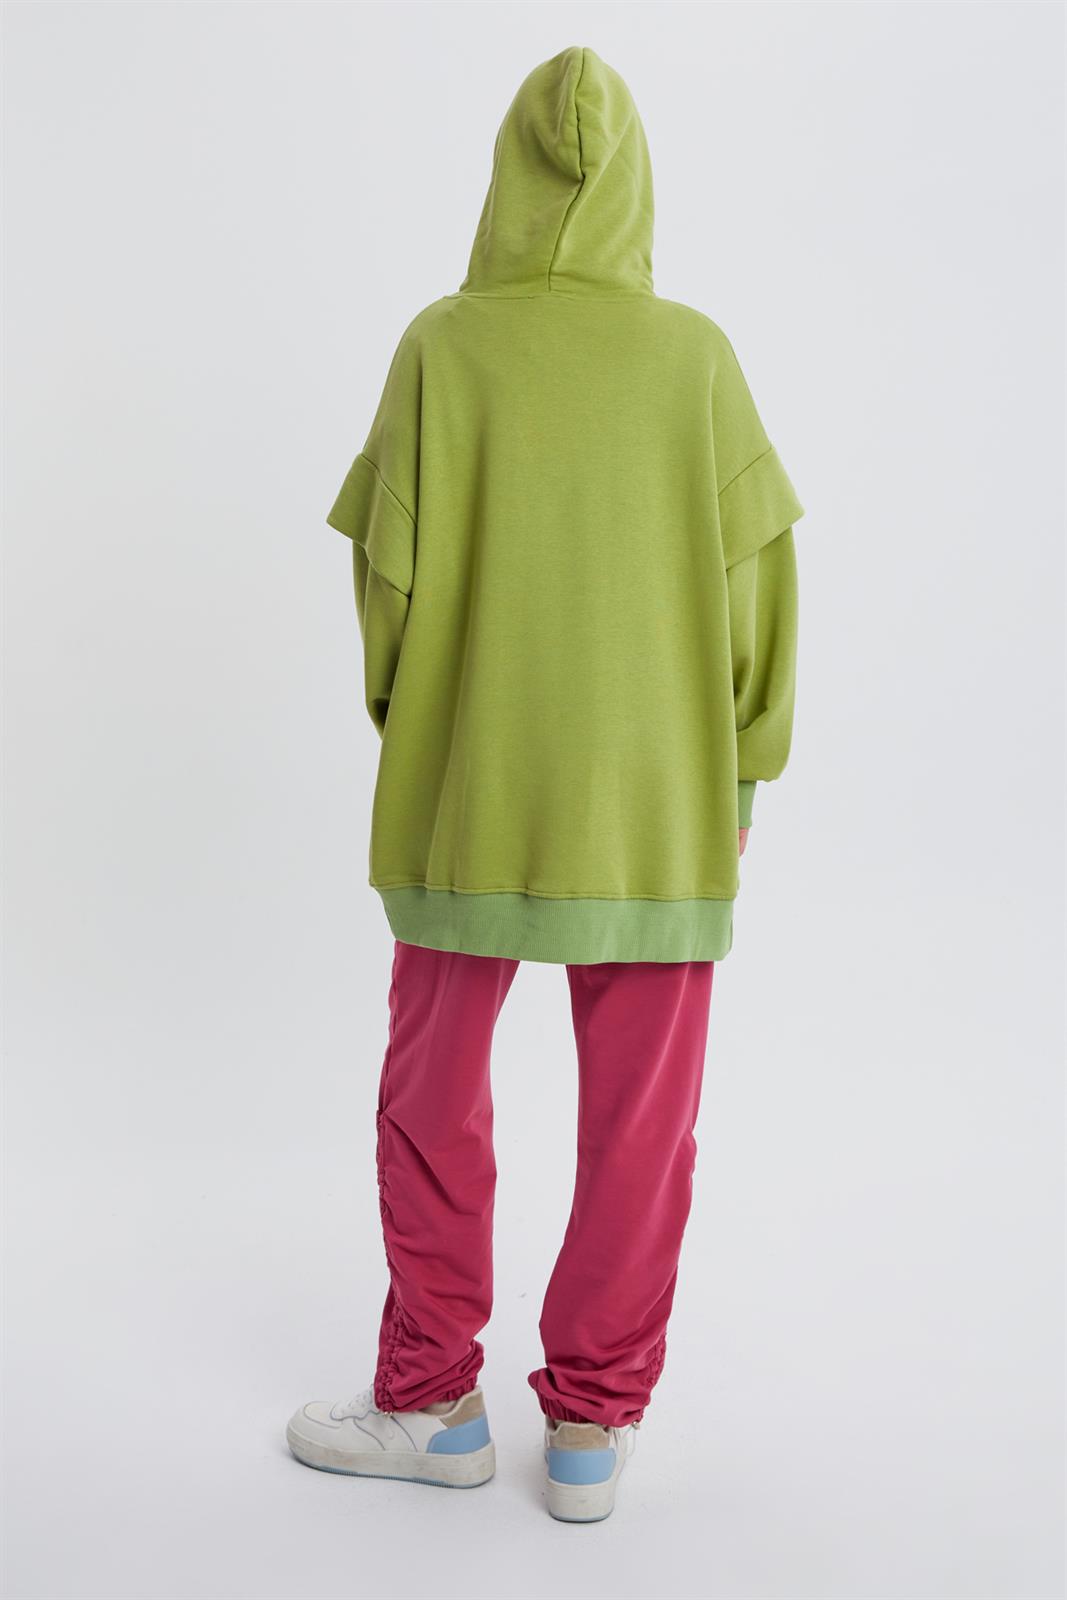 Allday Fıstık Yeşili Cebi Fermuarlı Kapüşonlu Oversize Sweatshirt